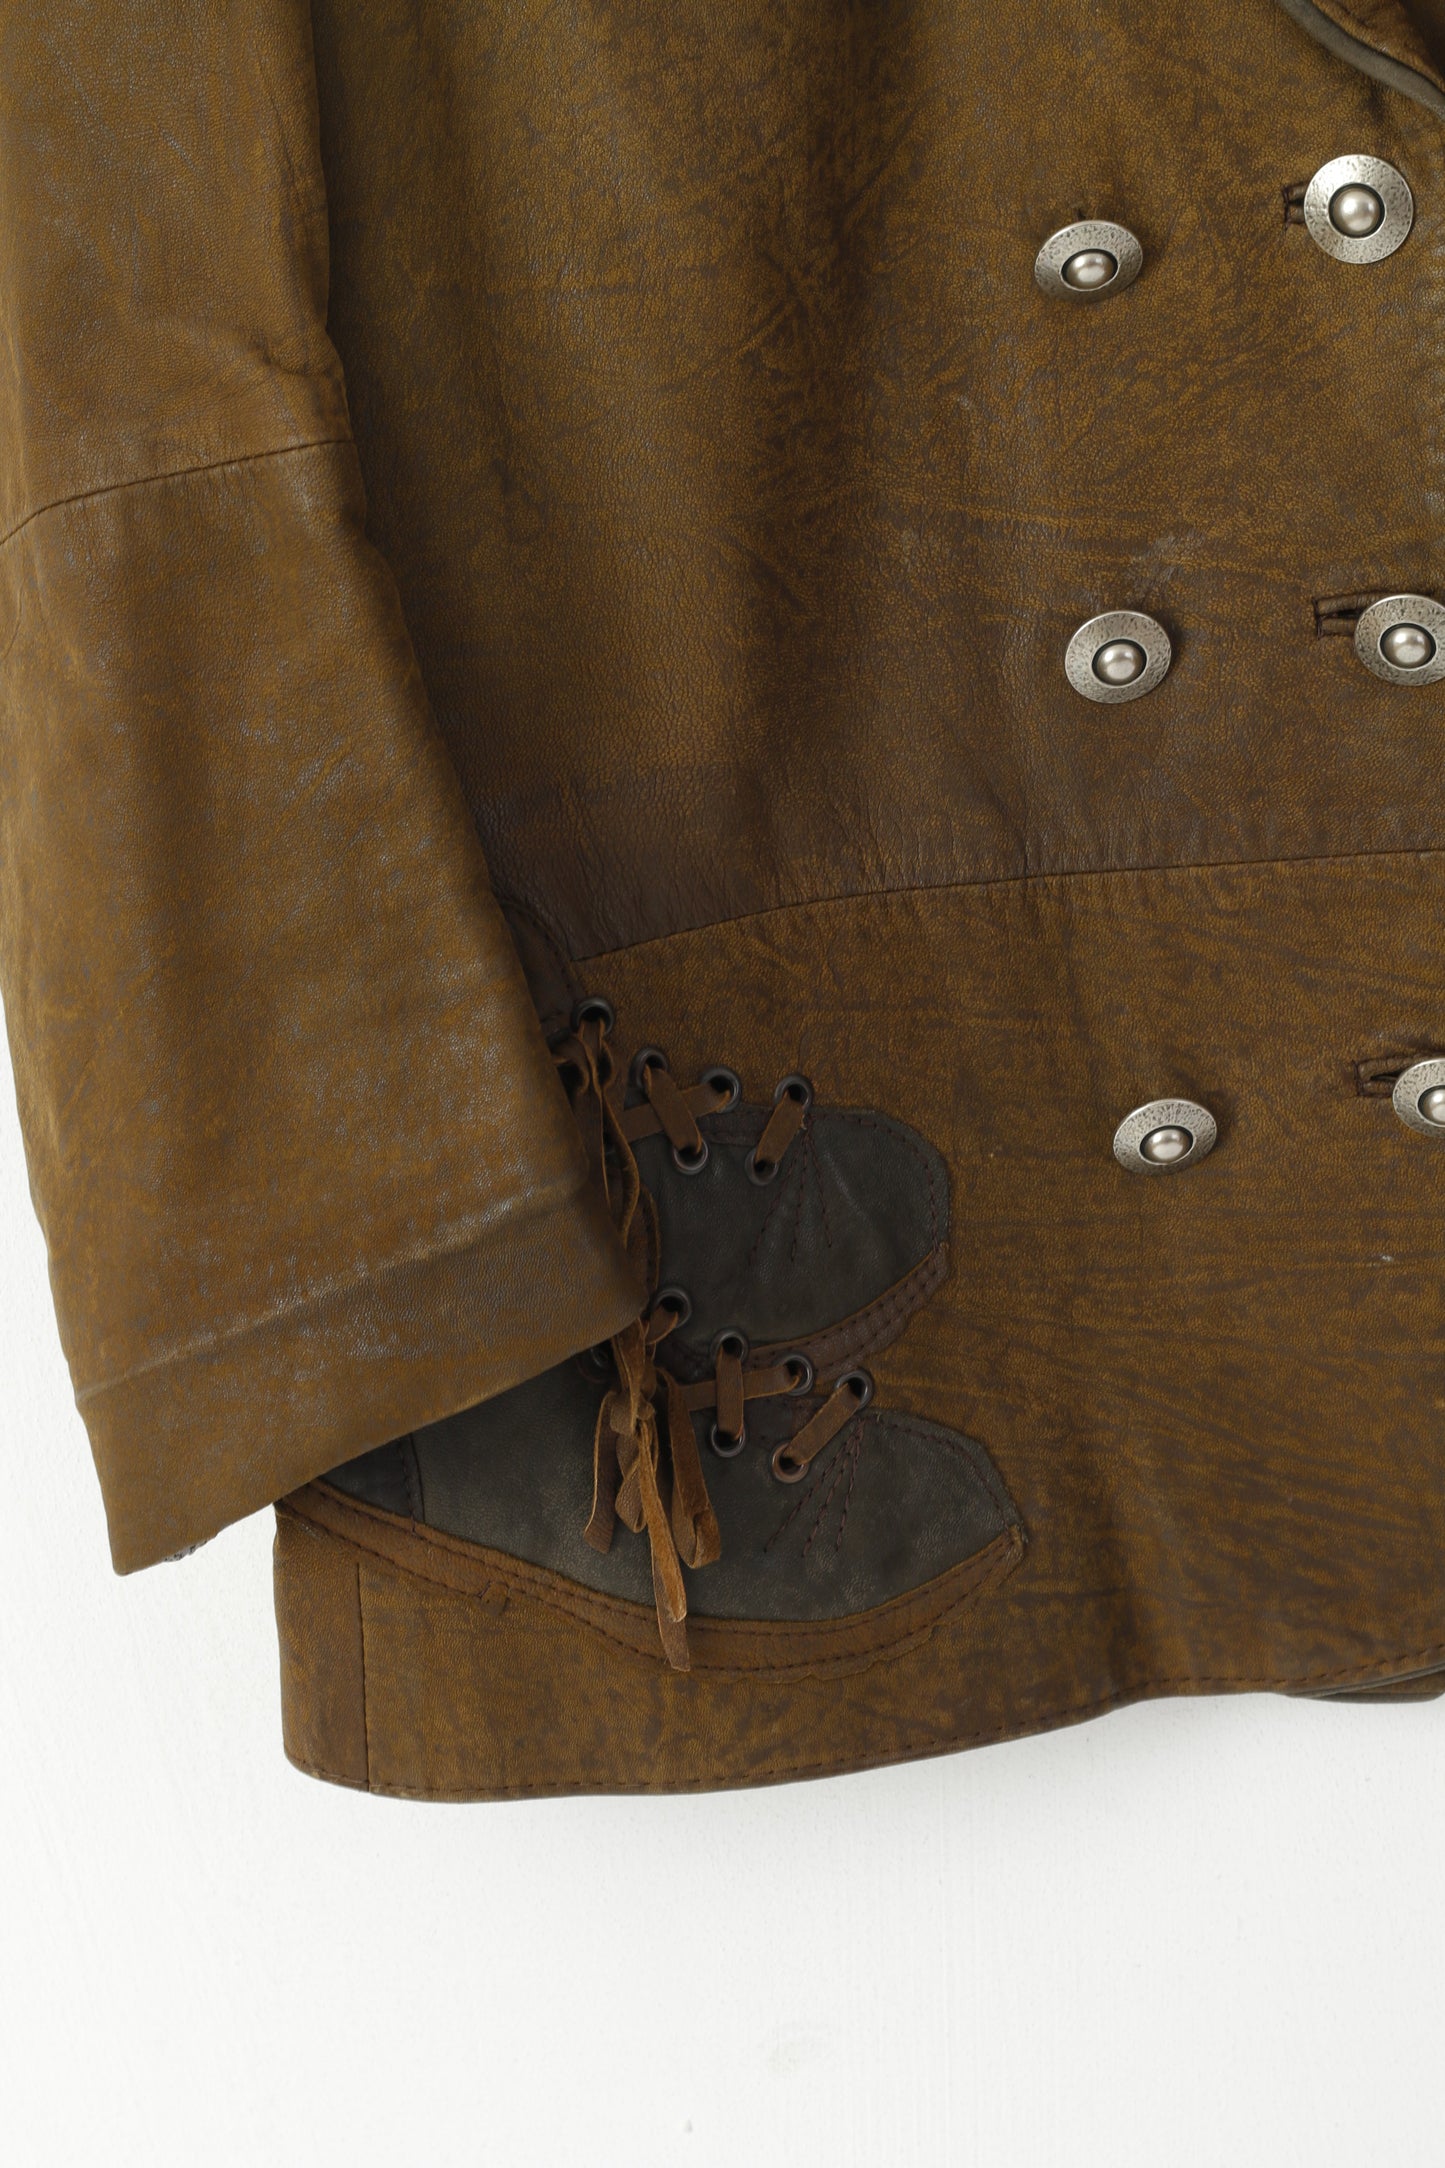 Giacca vintage da donna 36 S. Spallacci militari in pelle marrone con bottoni decorativi sulla parte superiore